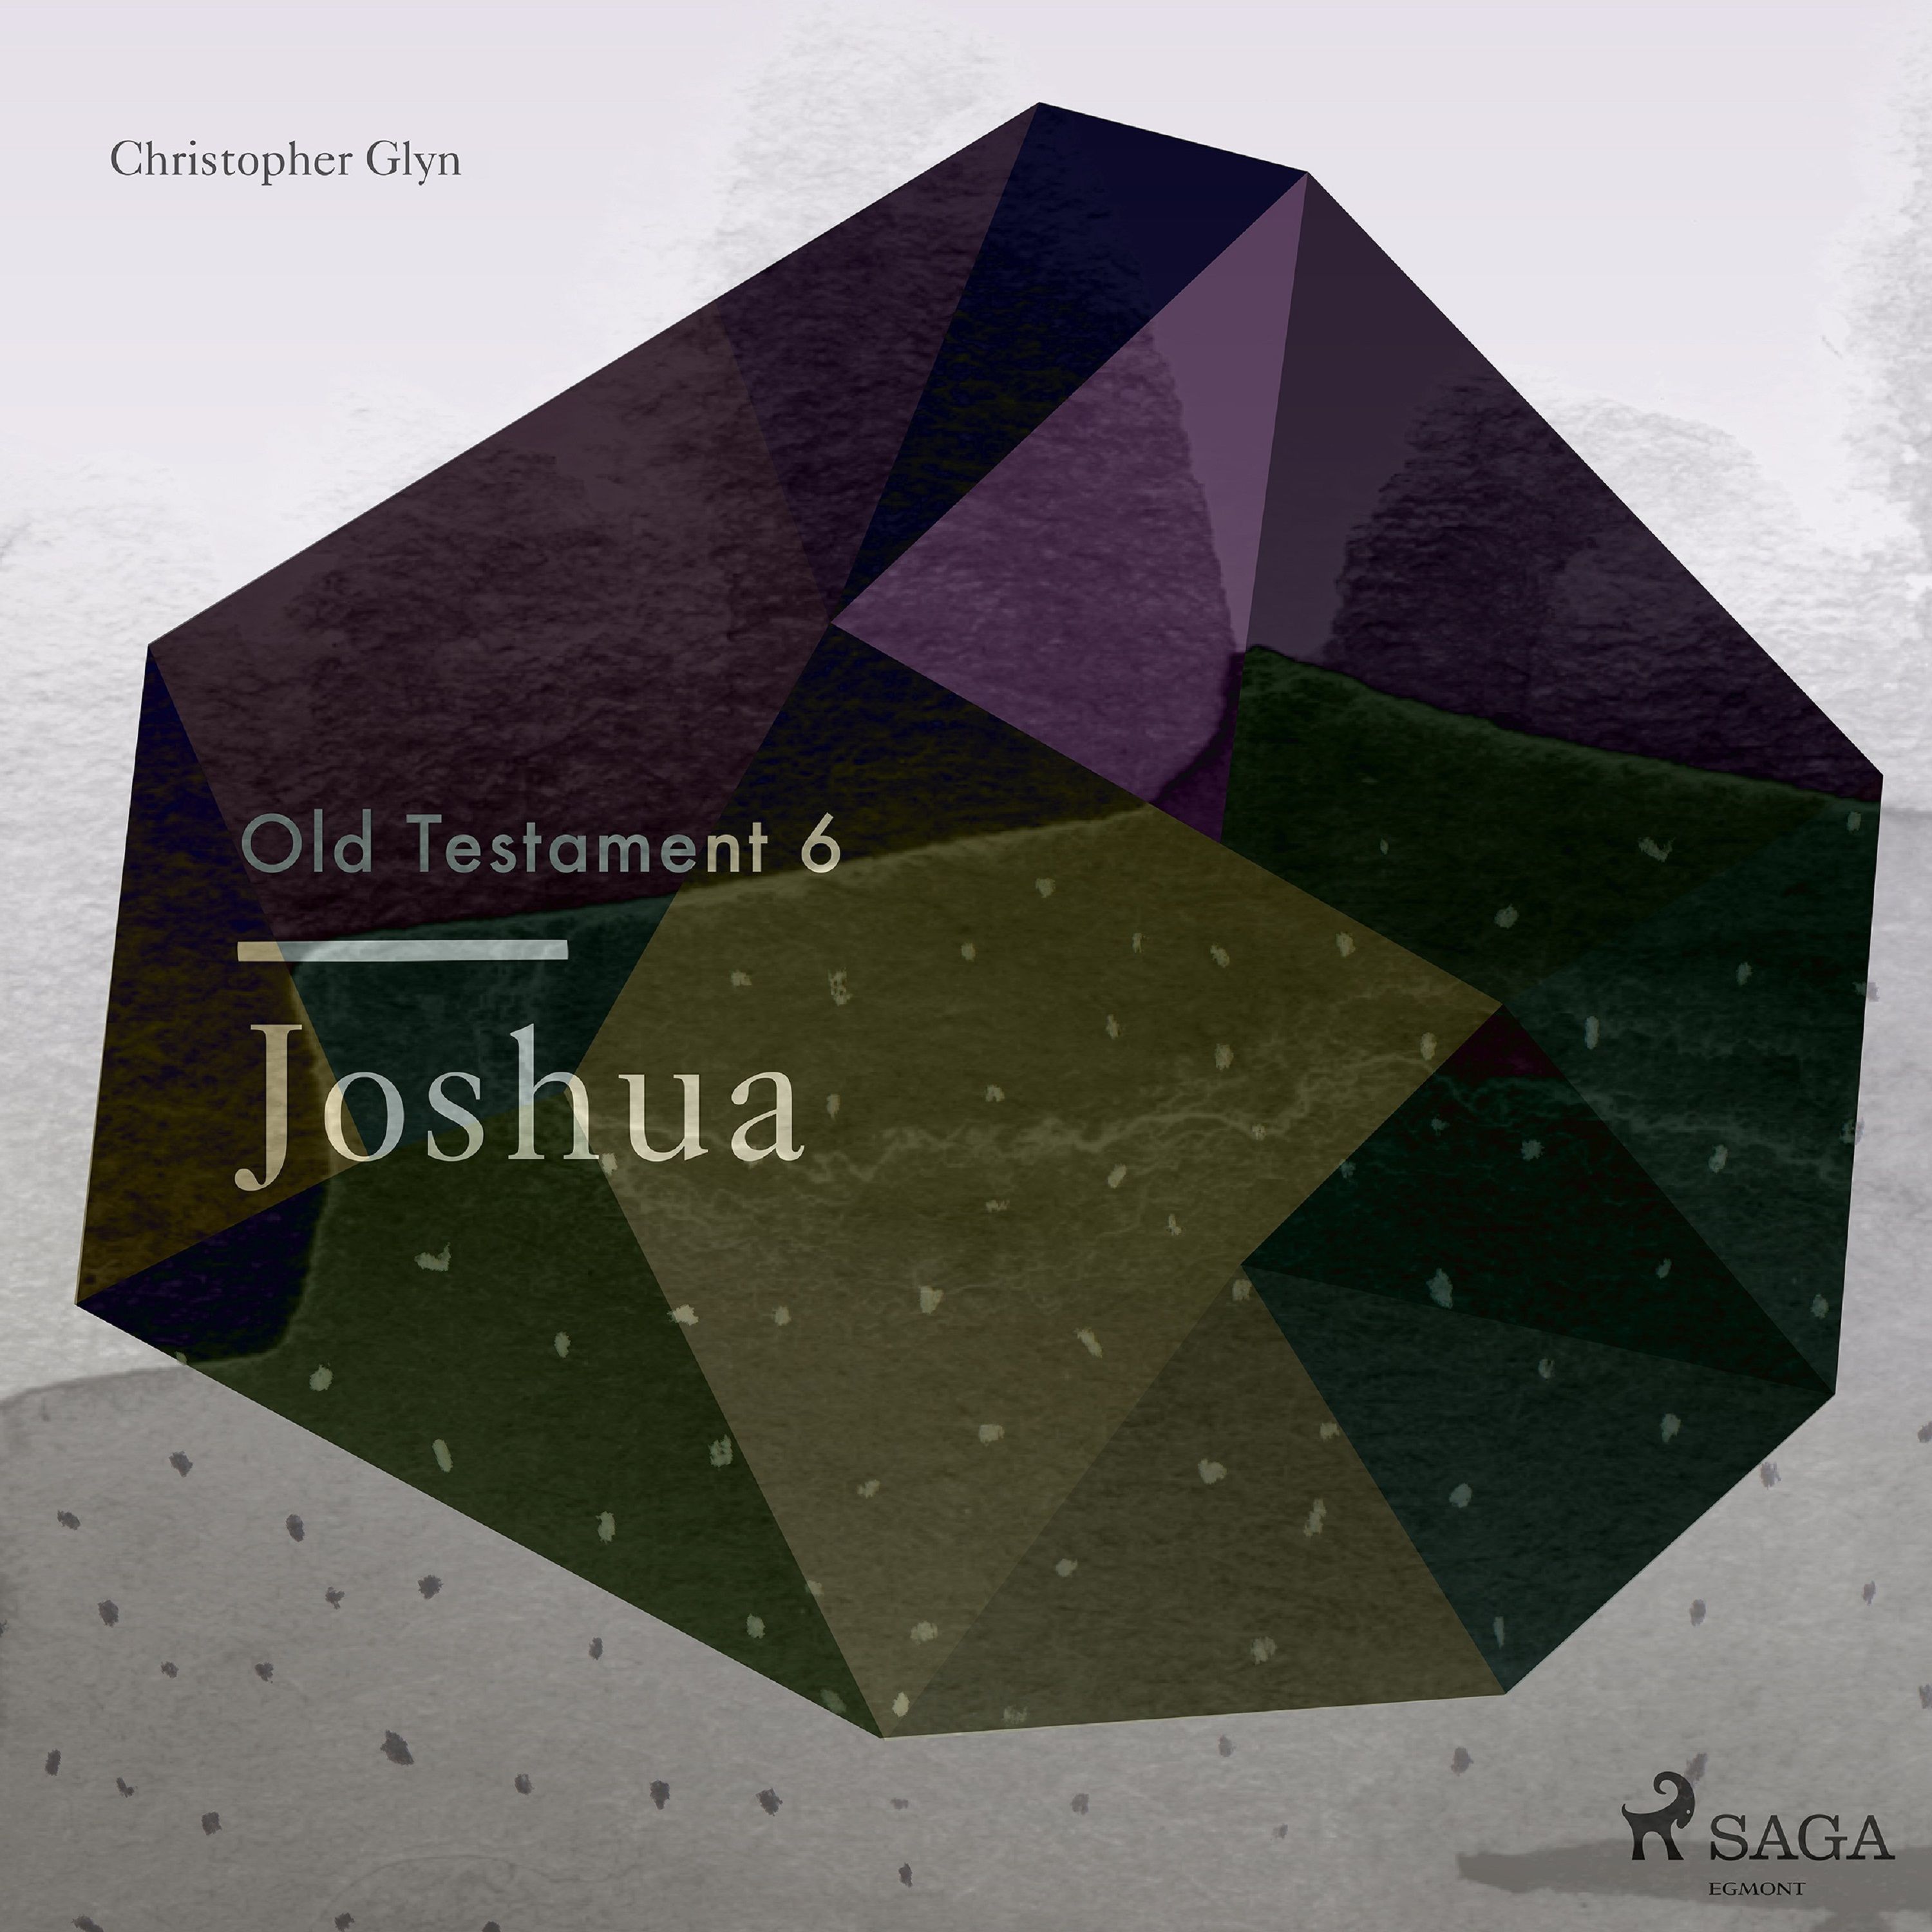 The Old Testament 6 - Joshua, lydbog af Christopher Glyn